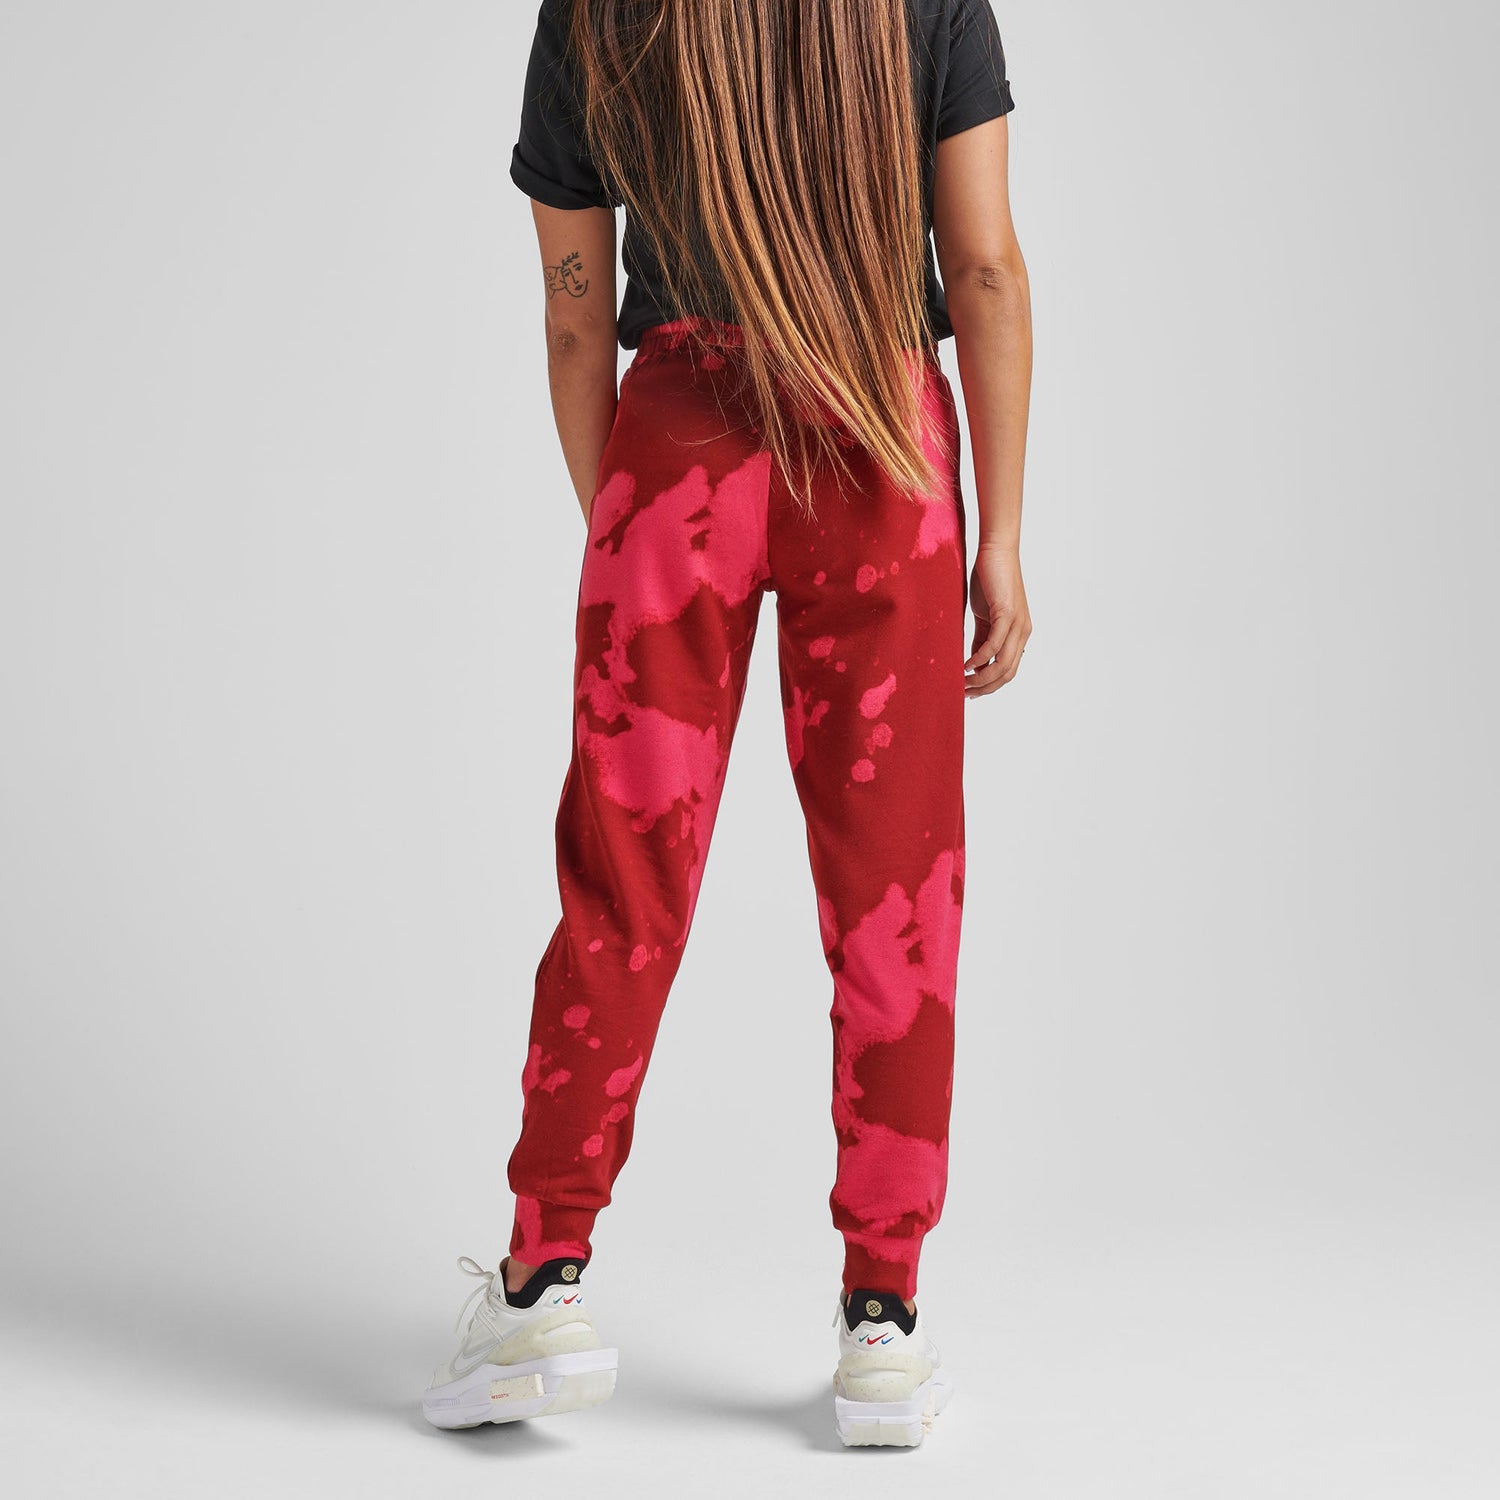 Pantalon de jogging pour femme rouge Shelter de Stance